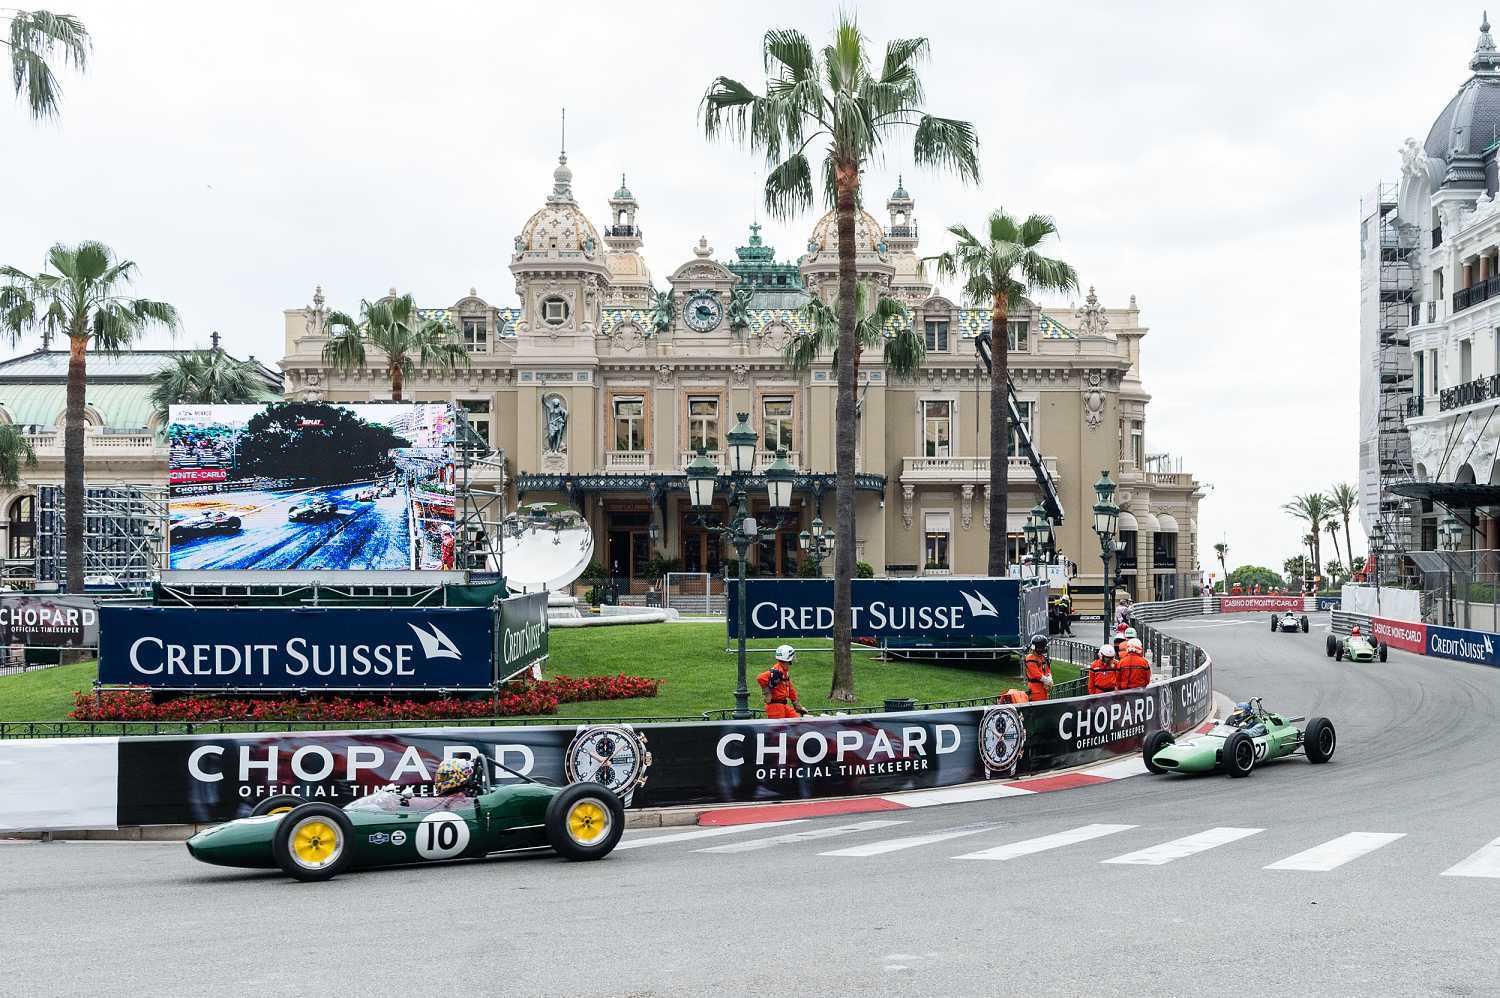 Chopard oficiální časomíra Grand Prix de Monaco 1 | Oficiální časomíra Grand Prix de Monaco - CHOPARD